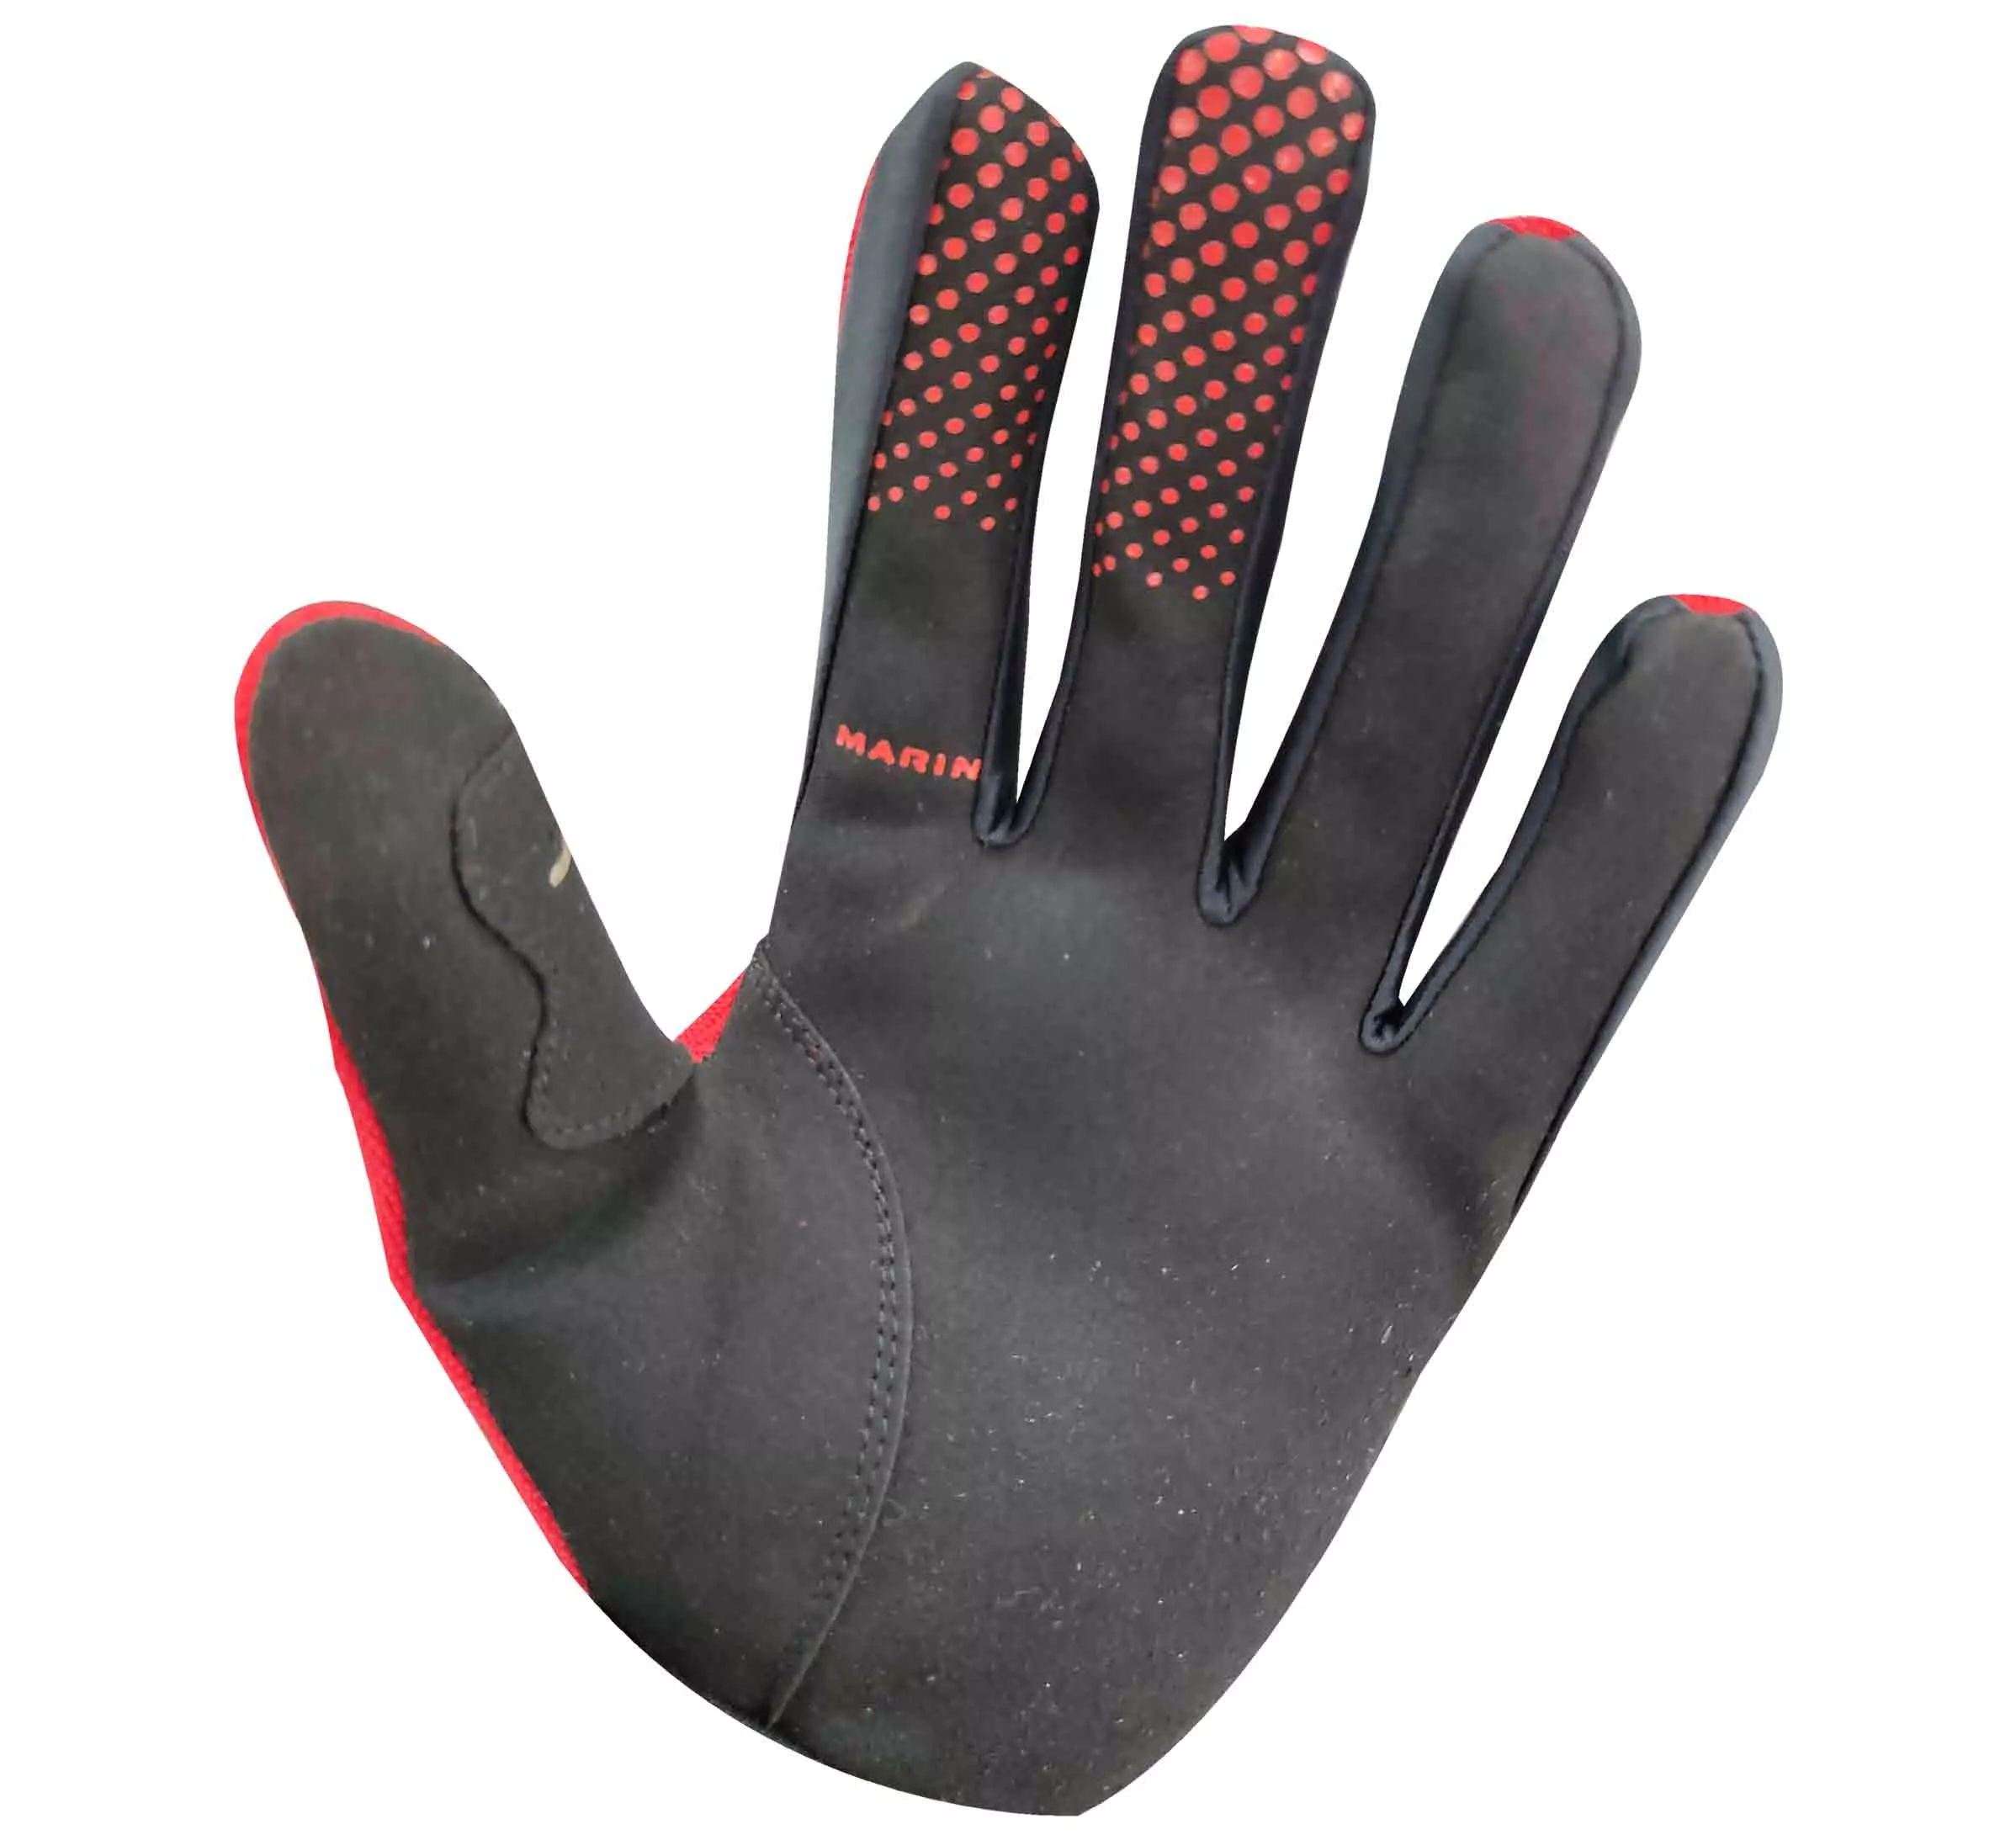 Marin guantes de Bicicleta Dedo Completo Nilon Poliester rojo